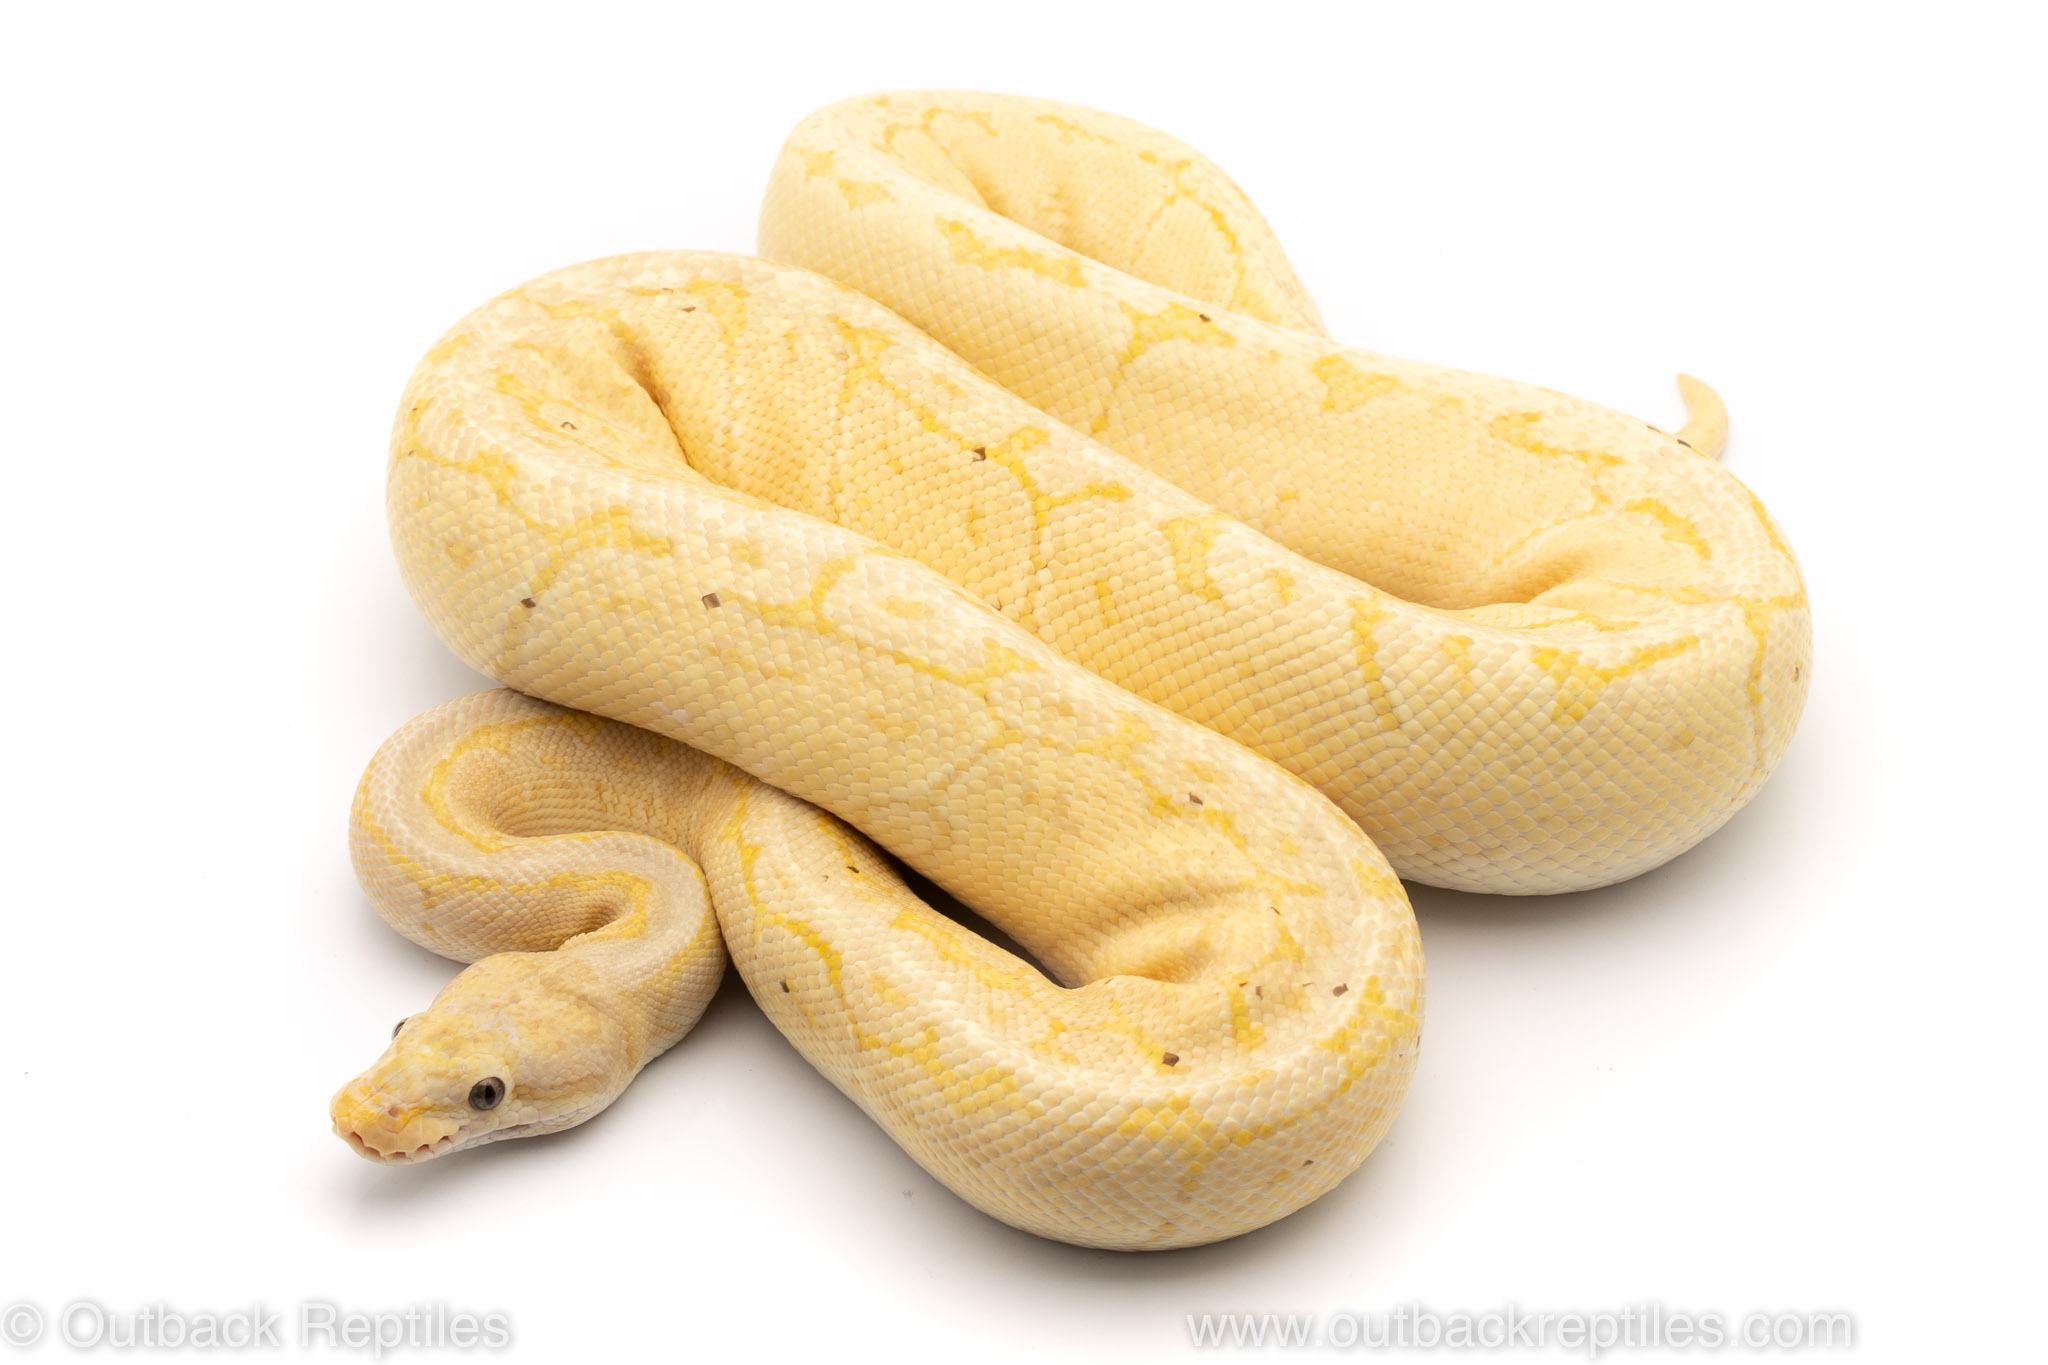 Lemon Blast Banana ball python for sale